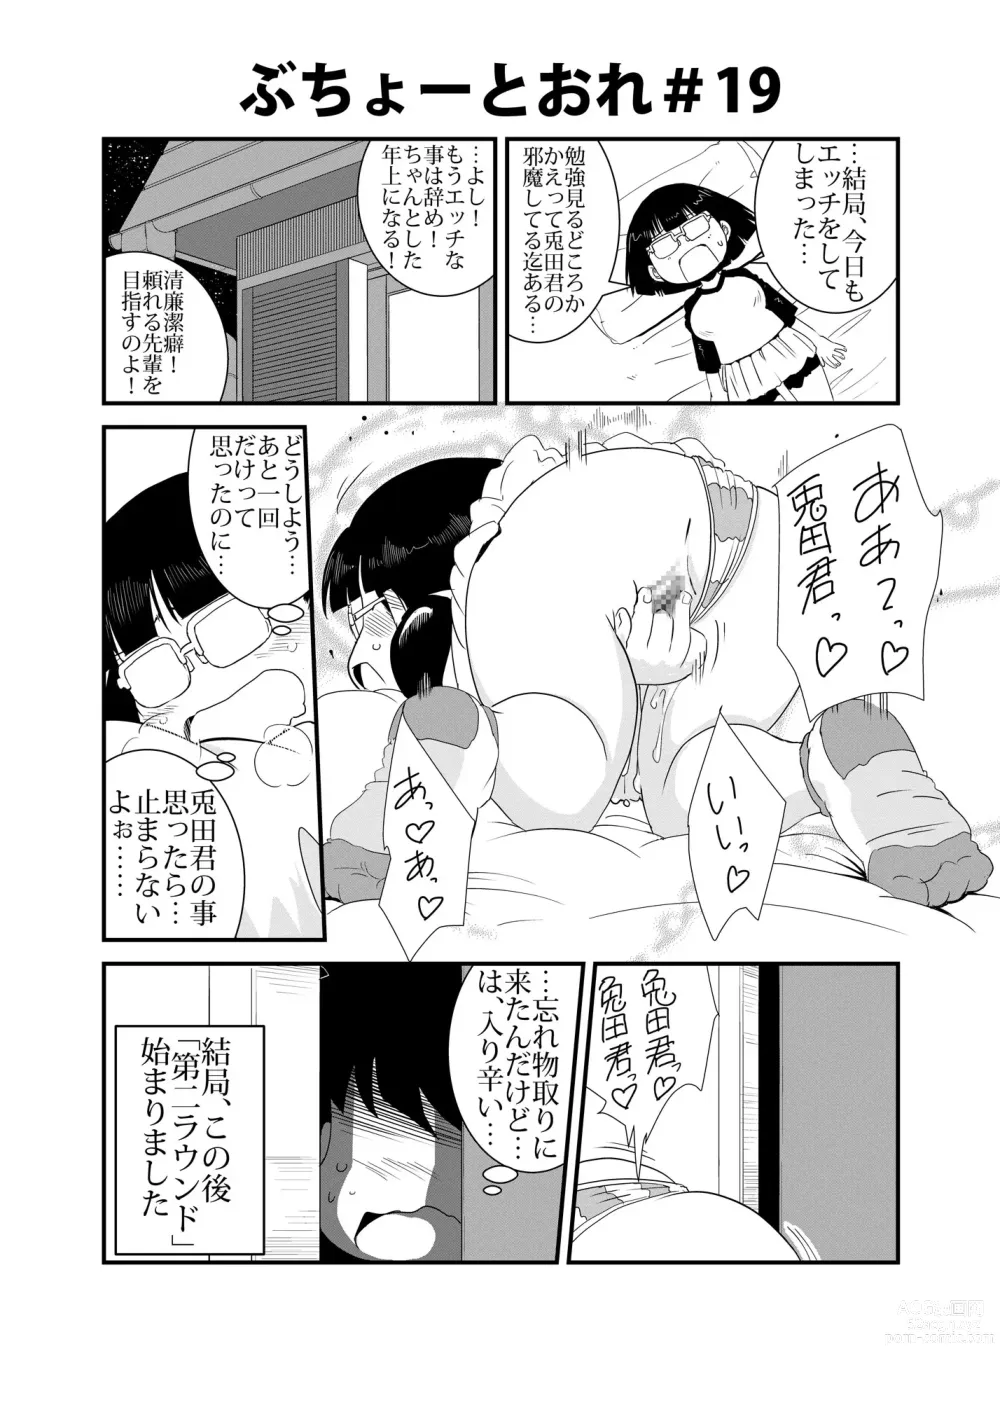 Page 19 of doujinshi Buchou to Ore